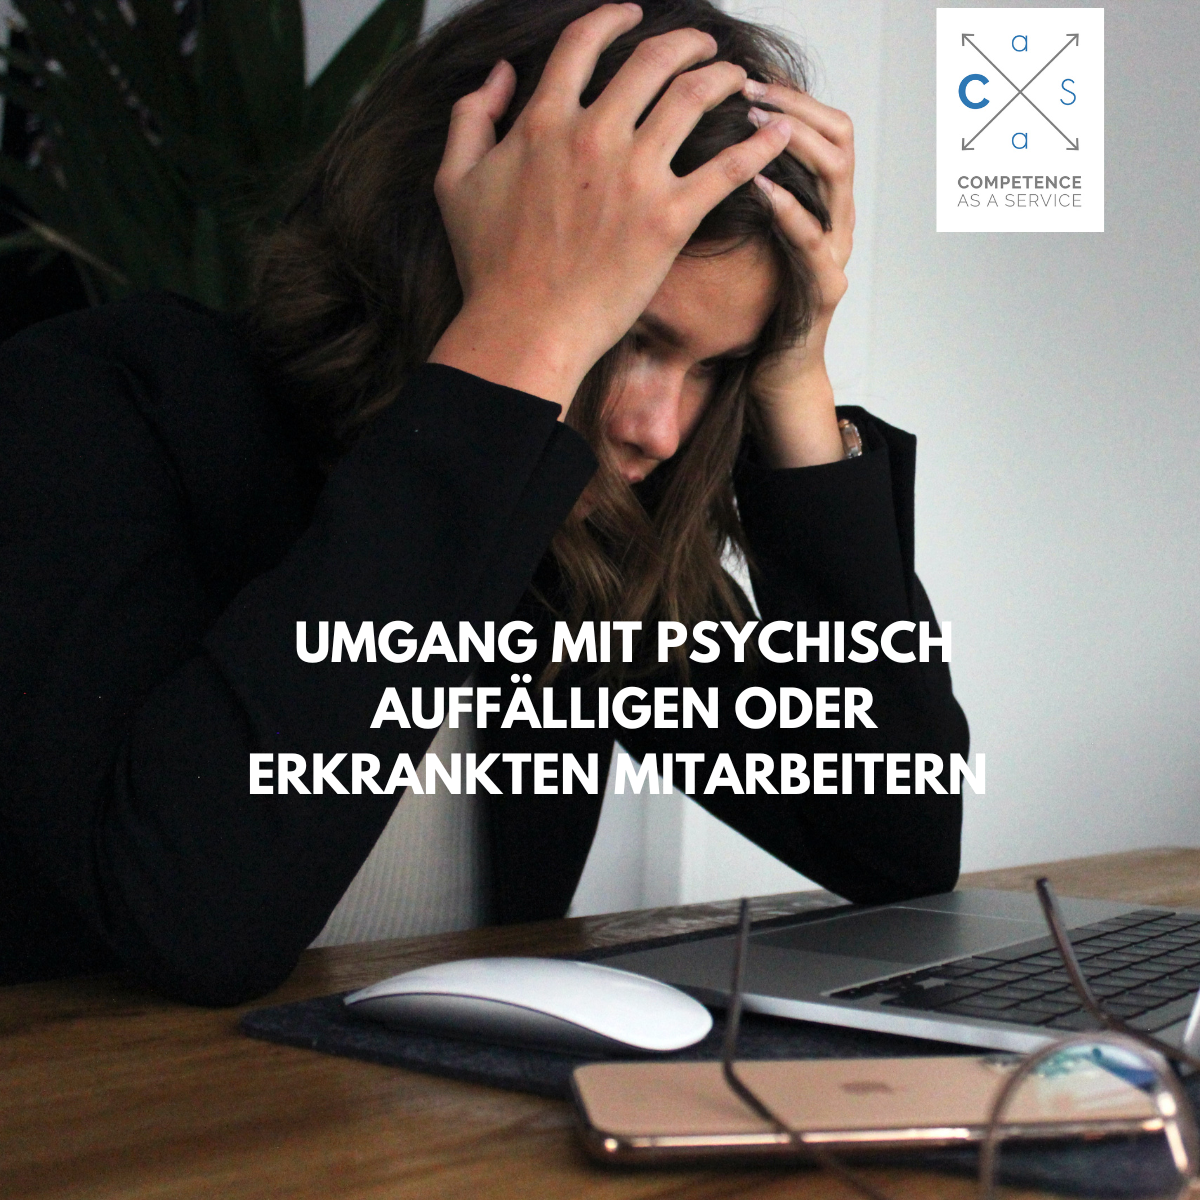 Workshop – Umgang mit psychisch auffälligen oder erkrankten Mitarbeitern – 120 min